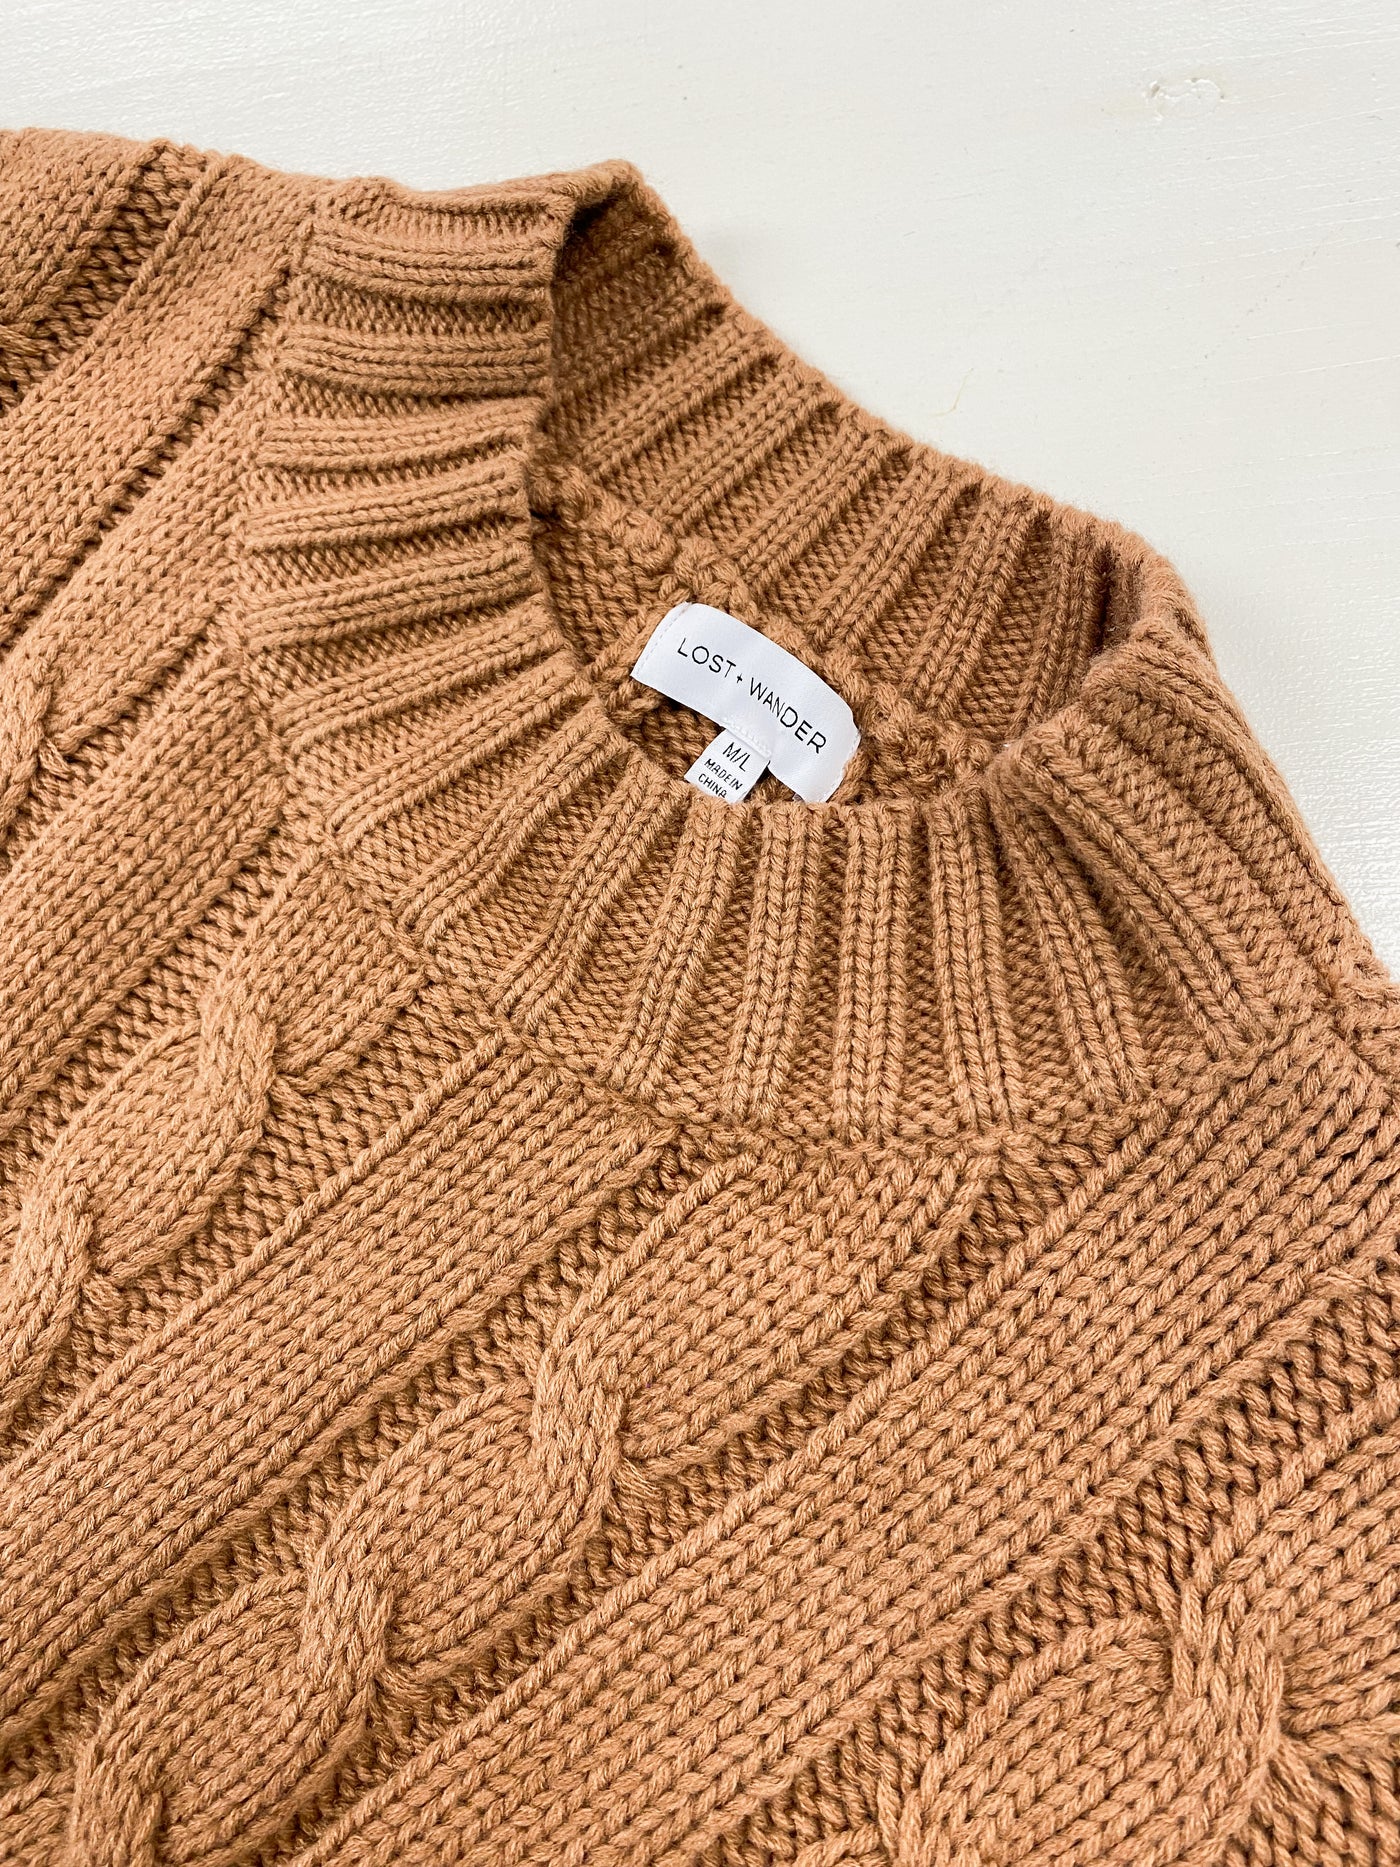 LOST + WANDER Sweater Dress